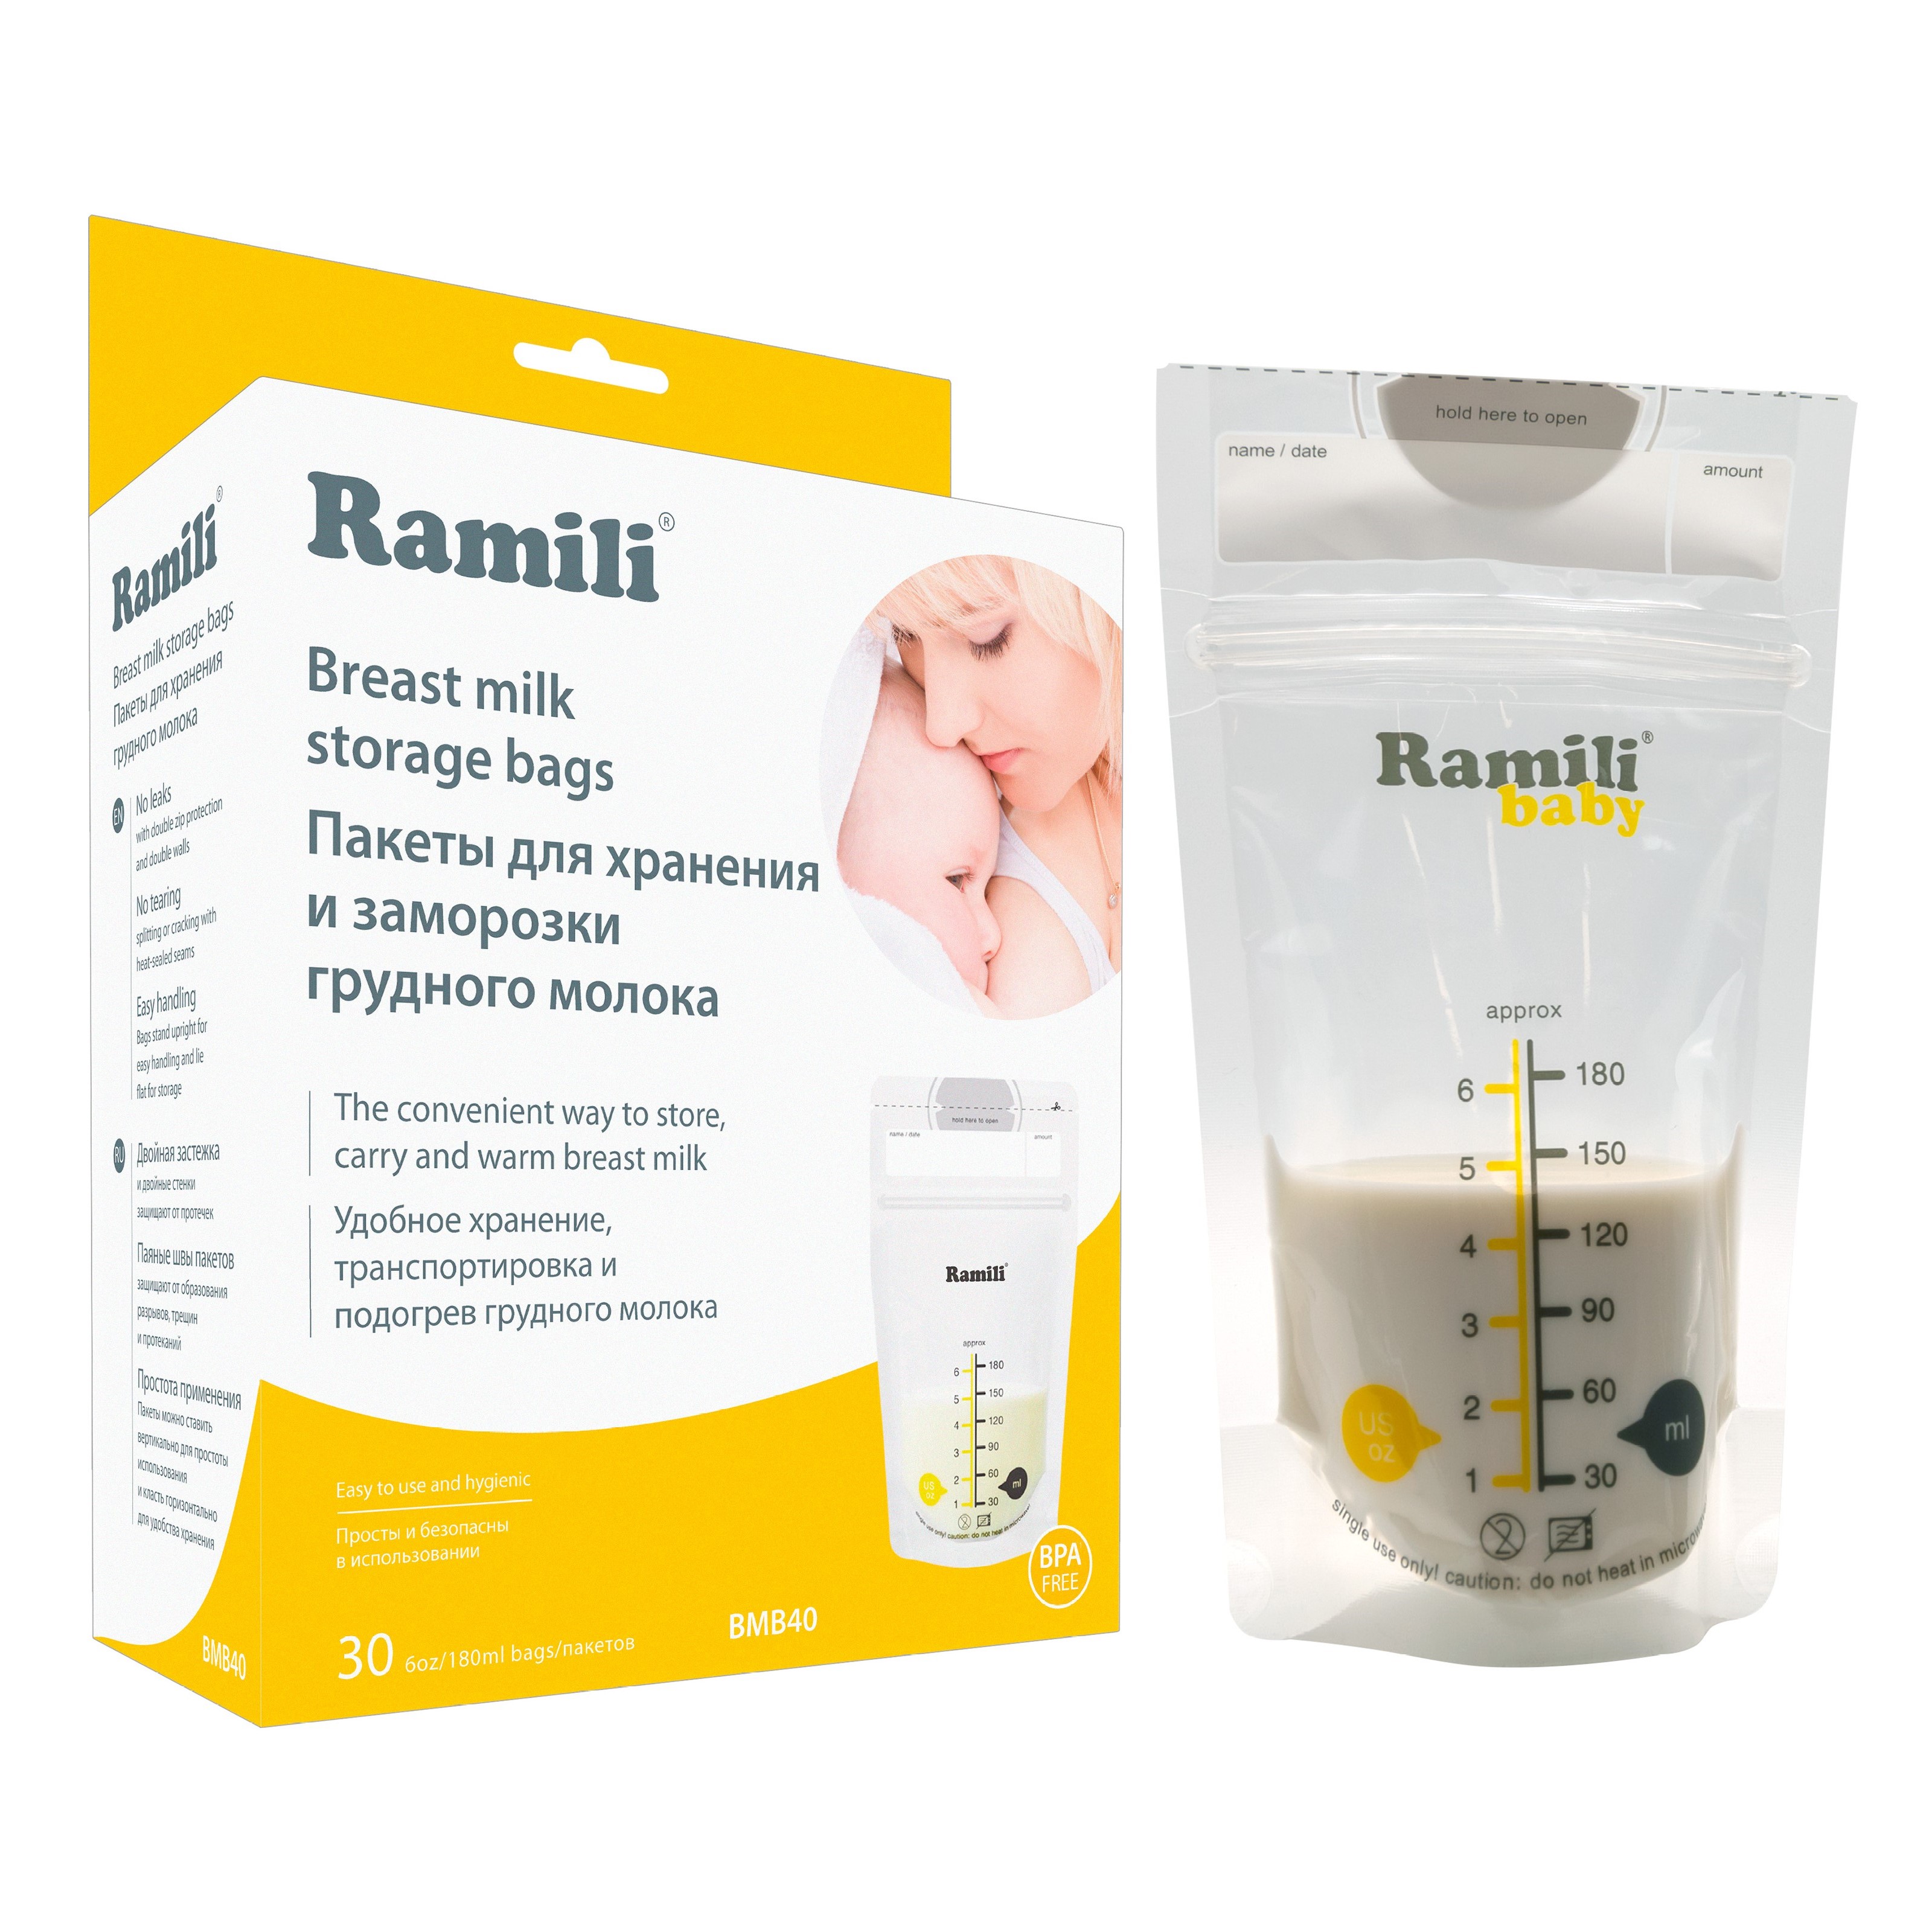 Пакеты для хранения и заморозки грудного молока Ramili Baby BMB40 пакеты для запекания универсальные 5 шт с клипсами homex очень удобные 1630